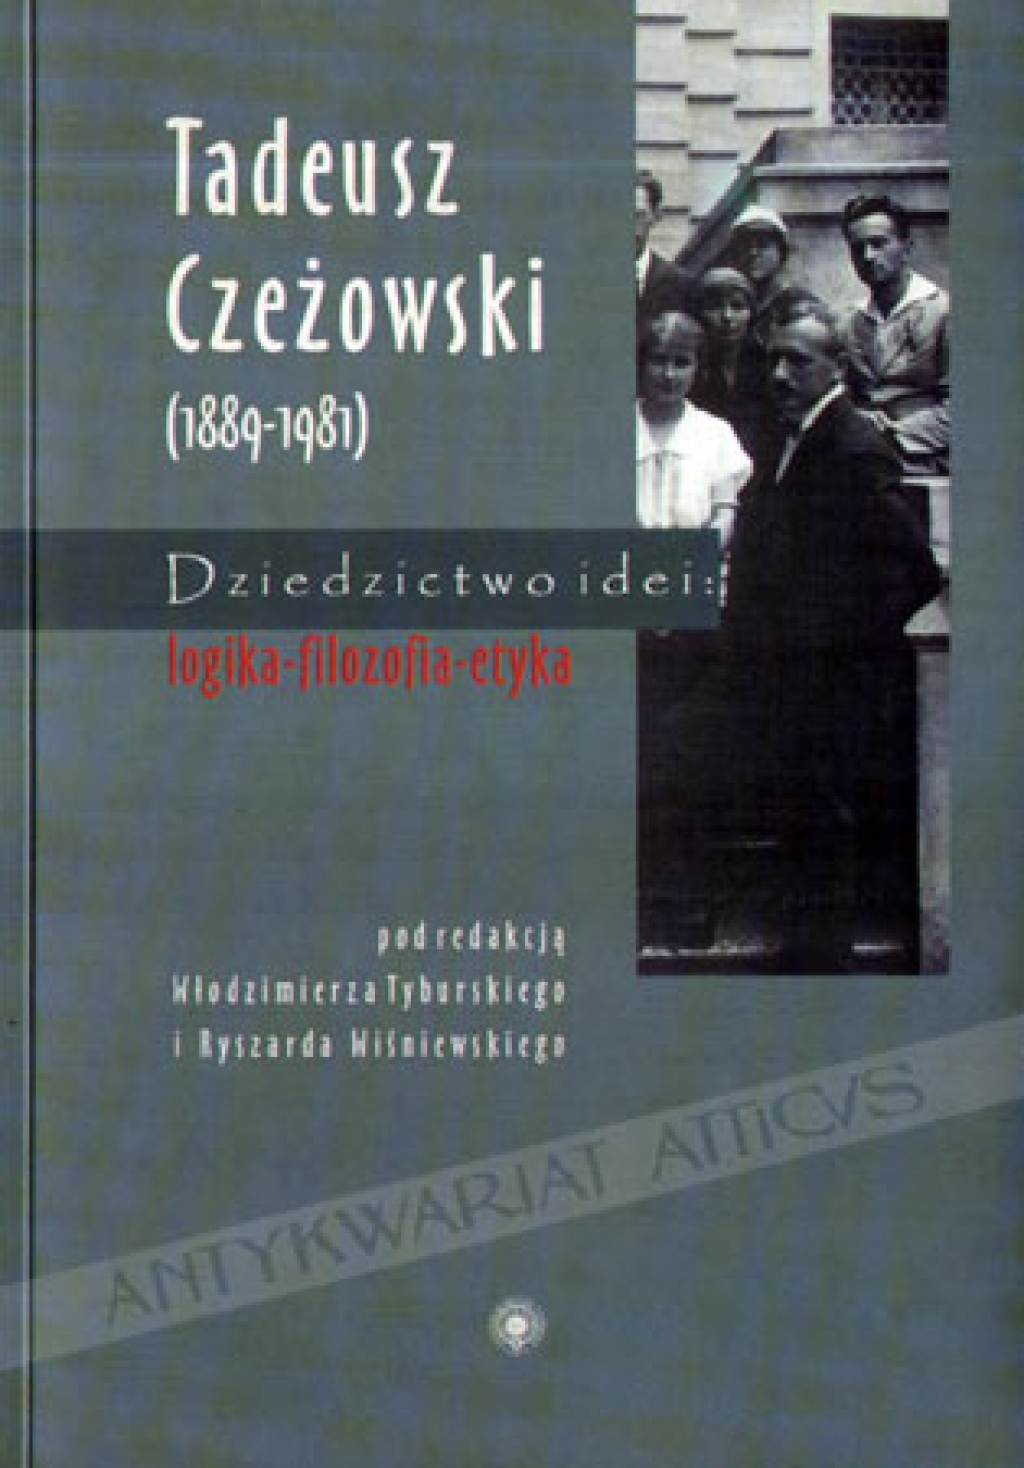 Tadeusz Czeżowski (1889 - 1981). Dziedzictwo idei: Logika - filozofia - etyka [zbiór tekstów]